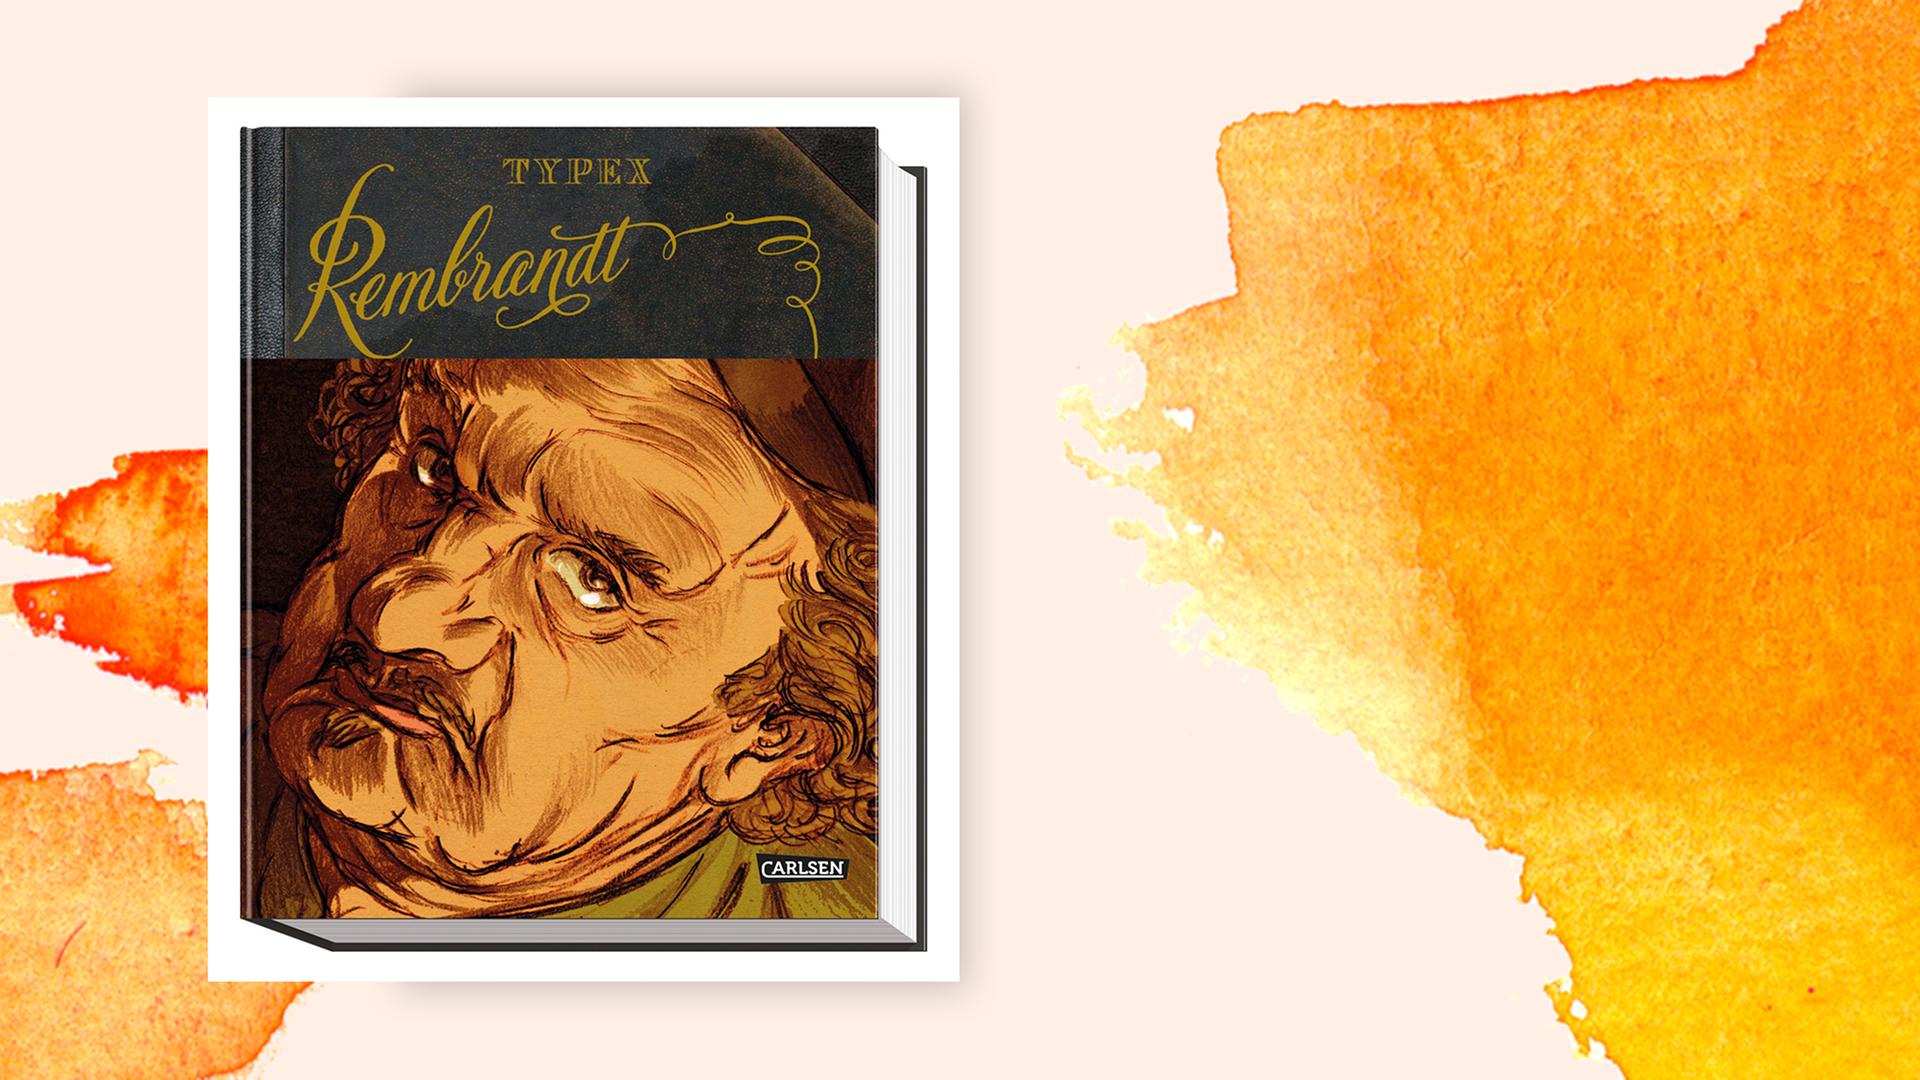 Cover der Graphic Novel "Rembrandt" von Typex vor einem orangenen Aquarellhintergrund.